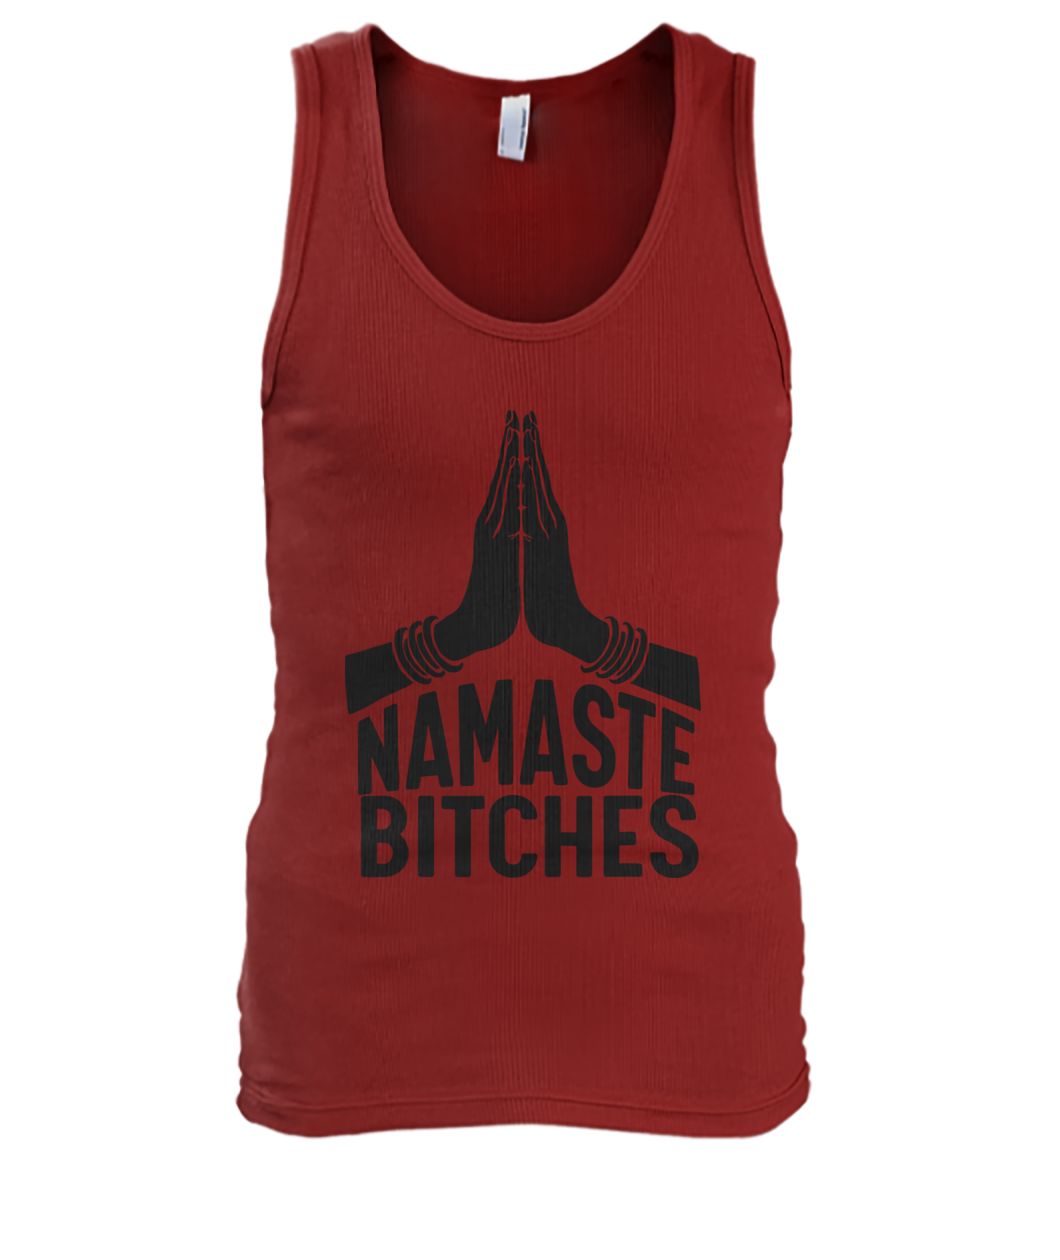 Namaste bitches yoga men's tank top